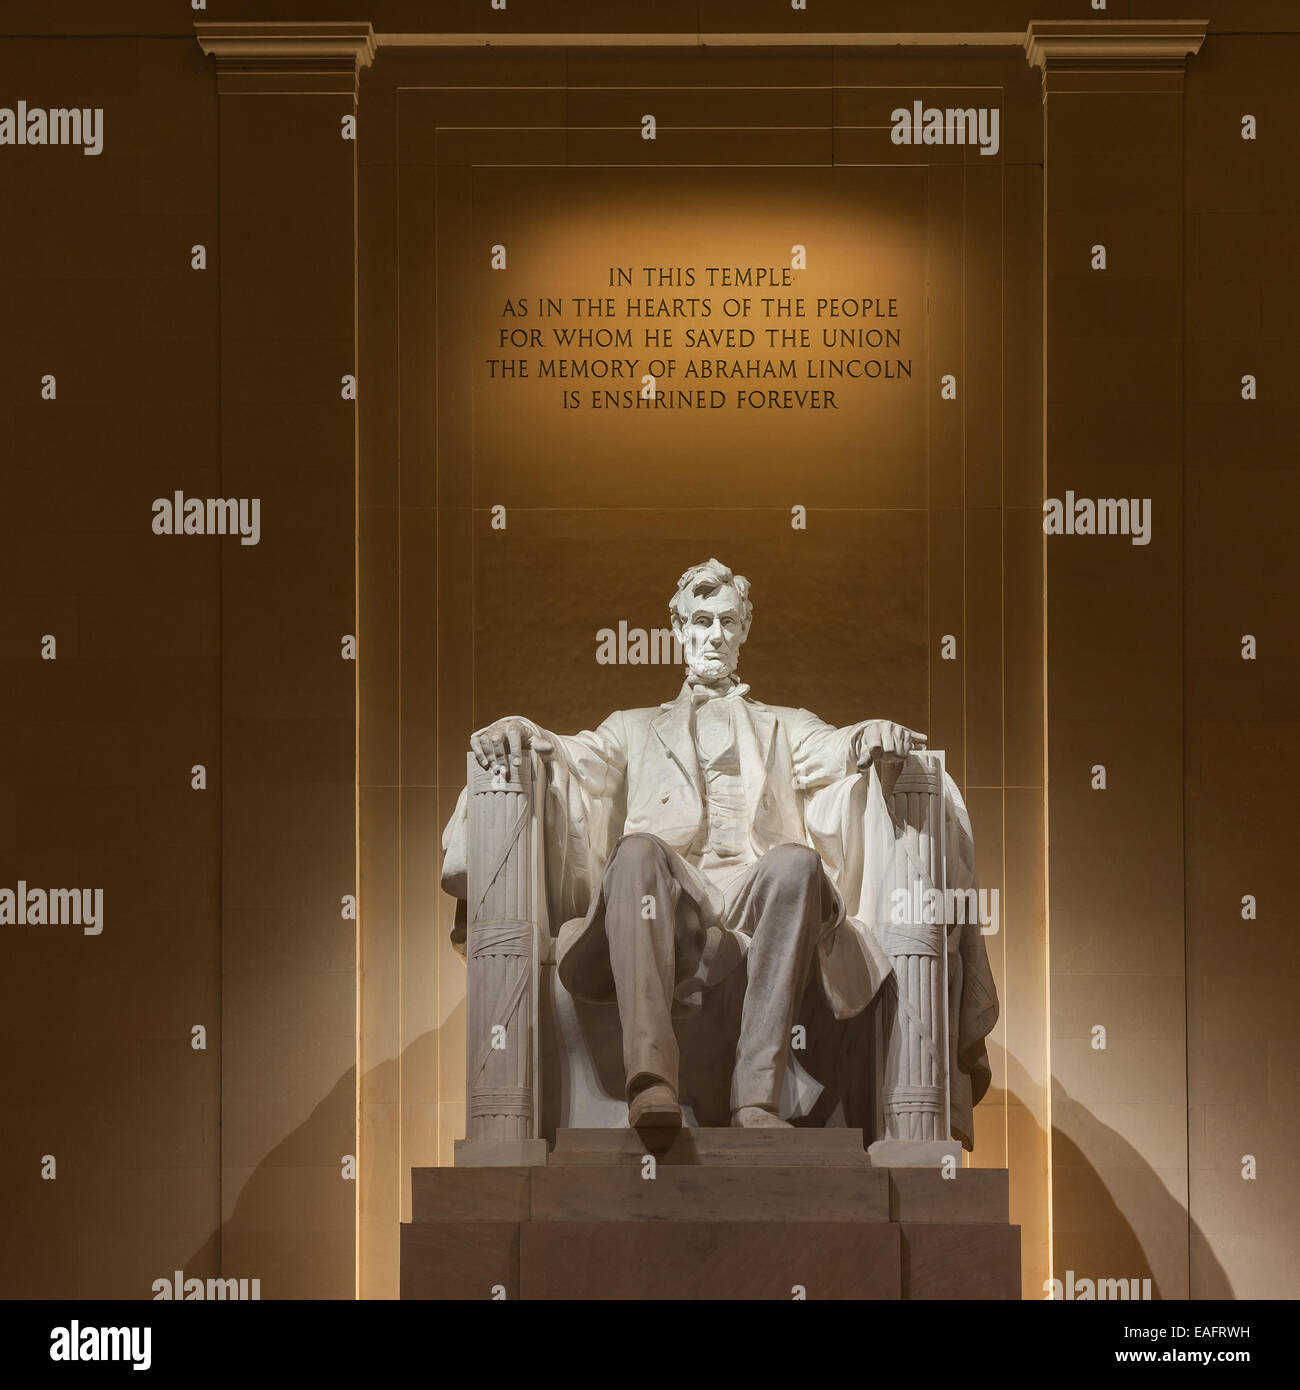 Le Lincoln Memorial est un monument national construit pour honorer le 16e président des États-Unis, Abraham Lincoln. Je Banque D'Images